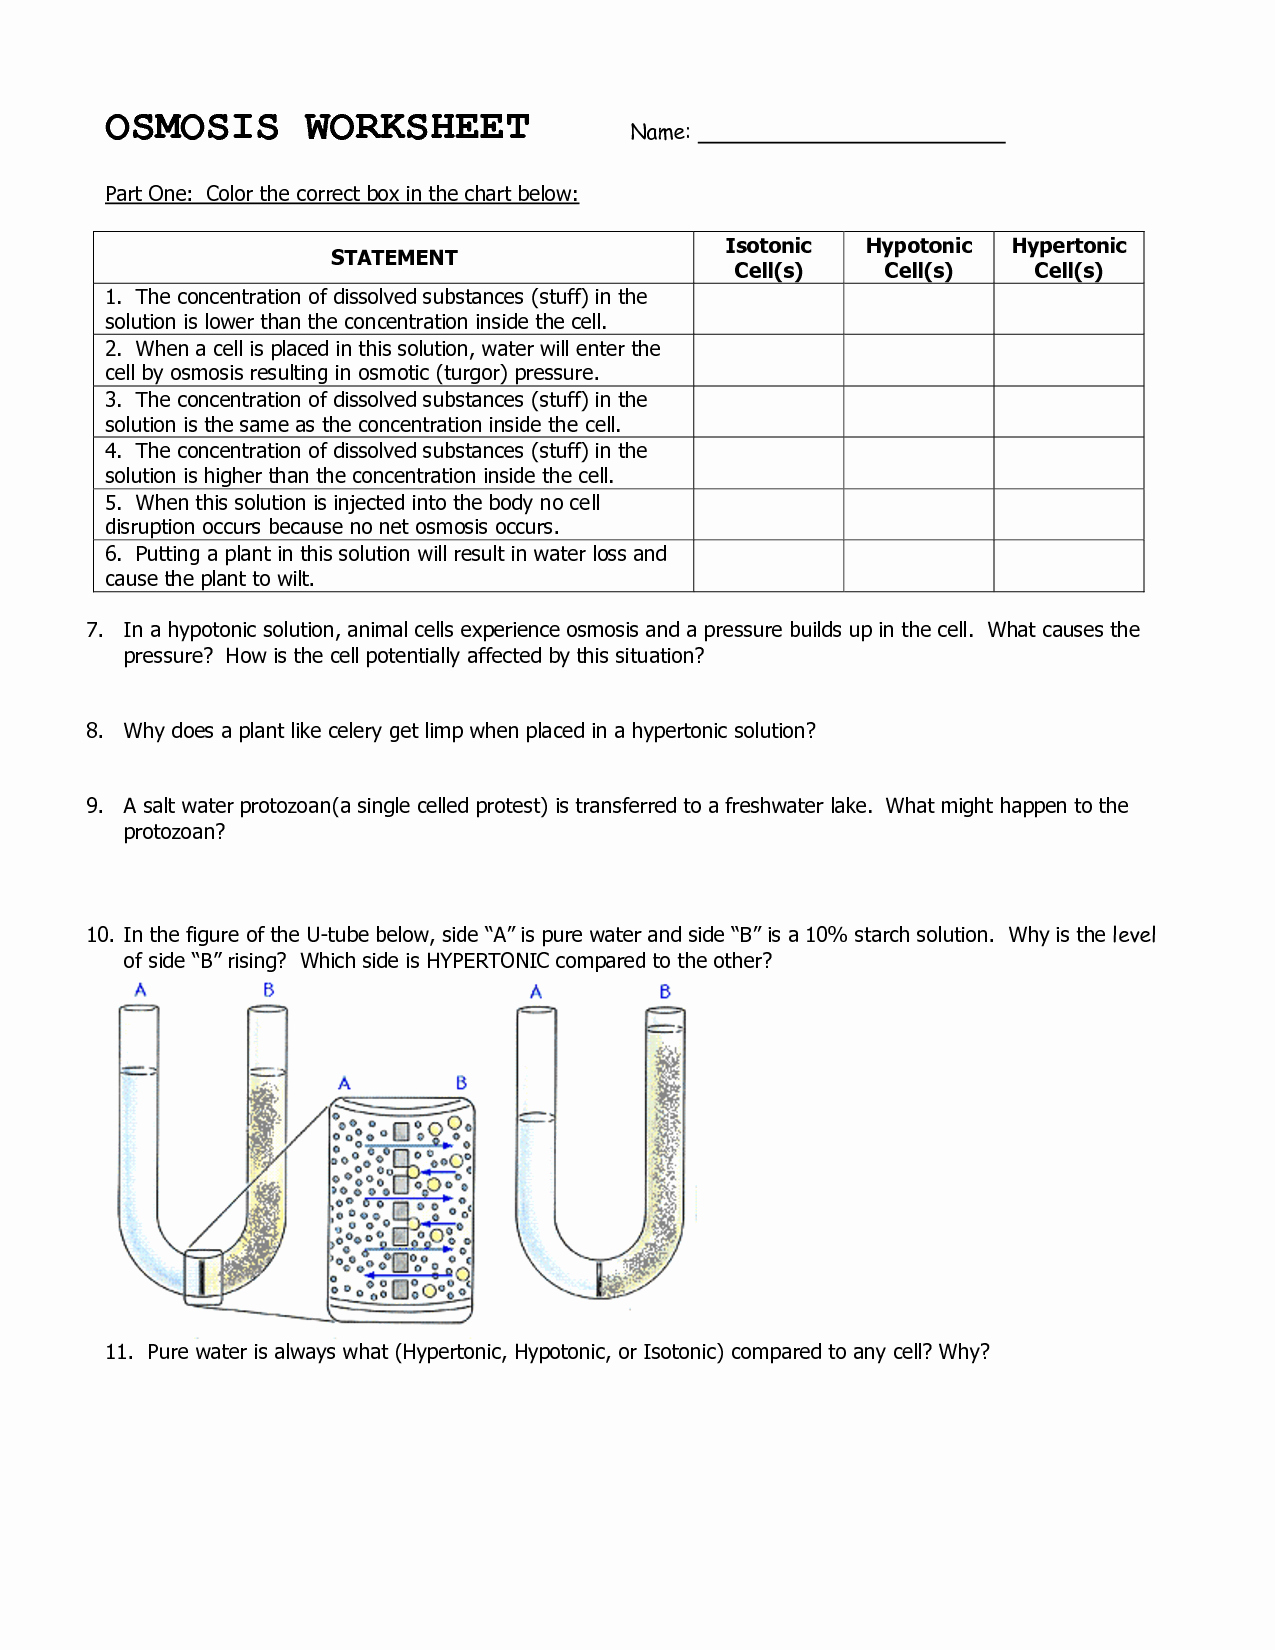 Diffusion and Osmosis Worksheet Fresh Osmosis and Diffusion Worksheet